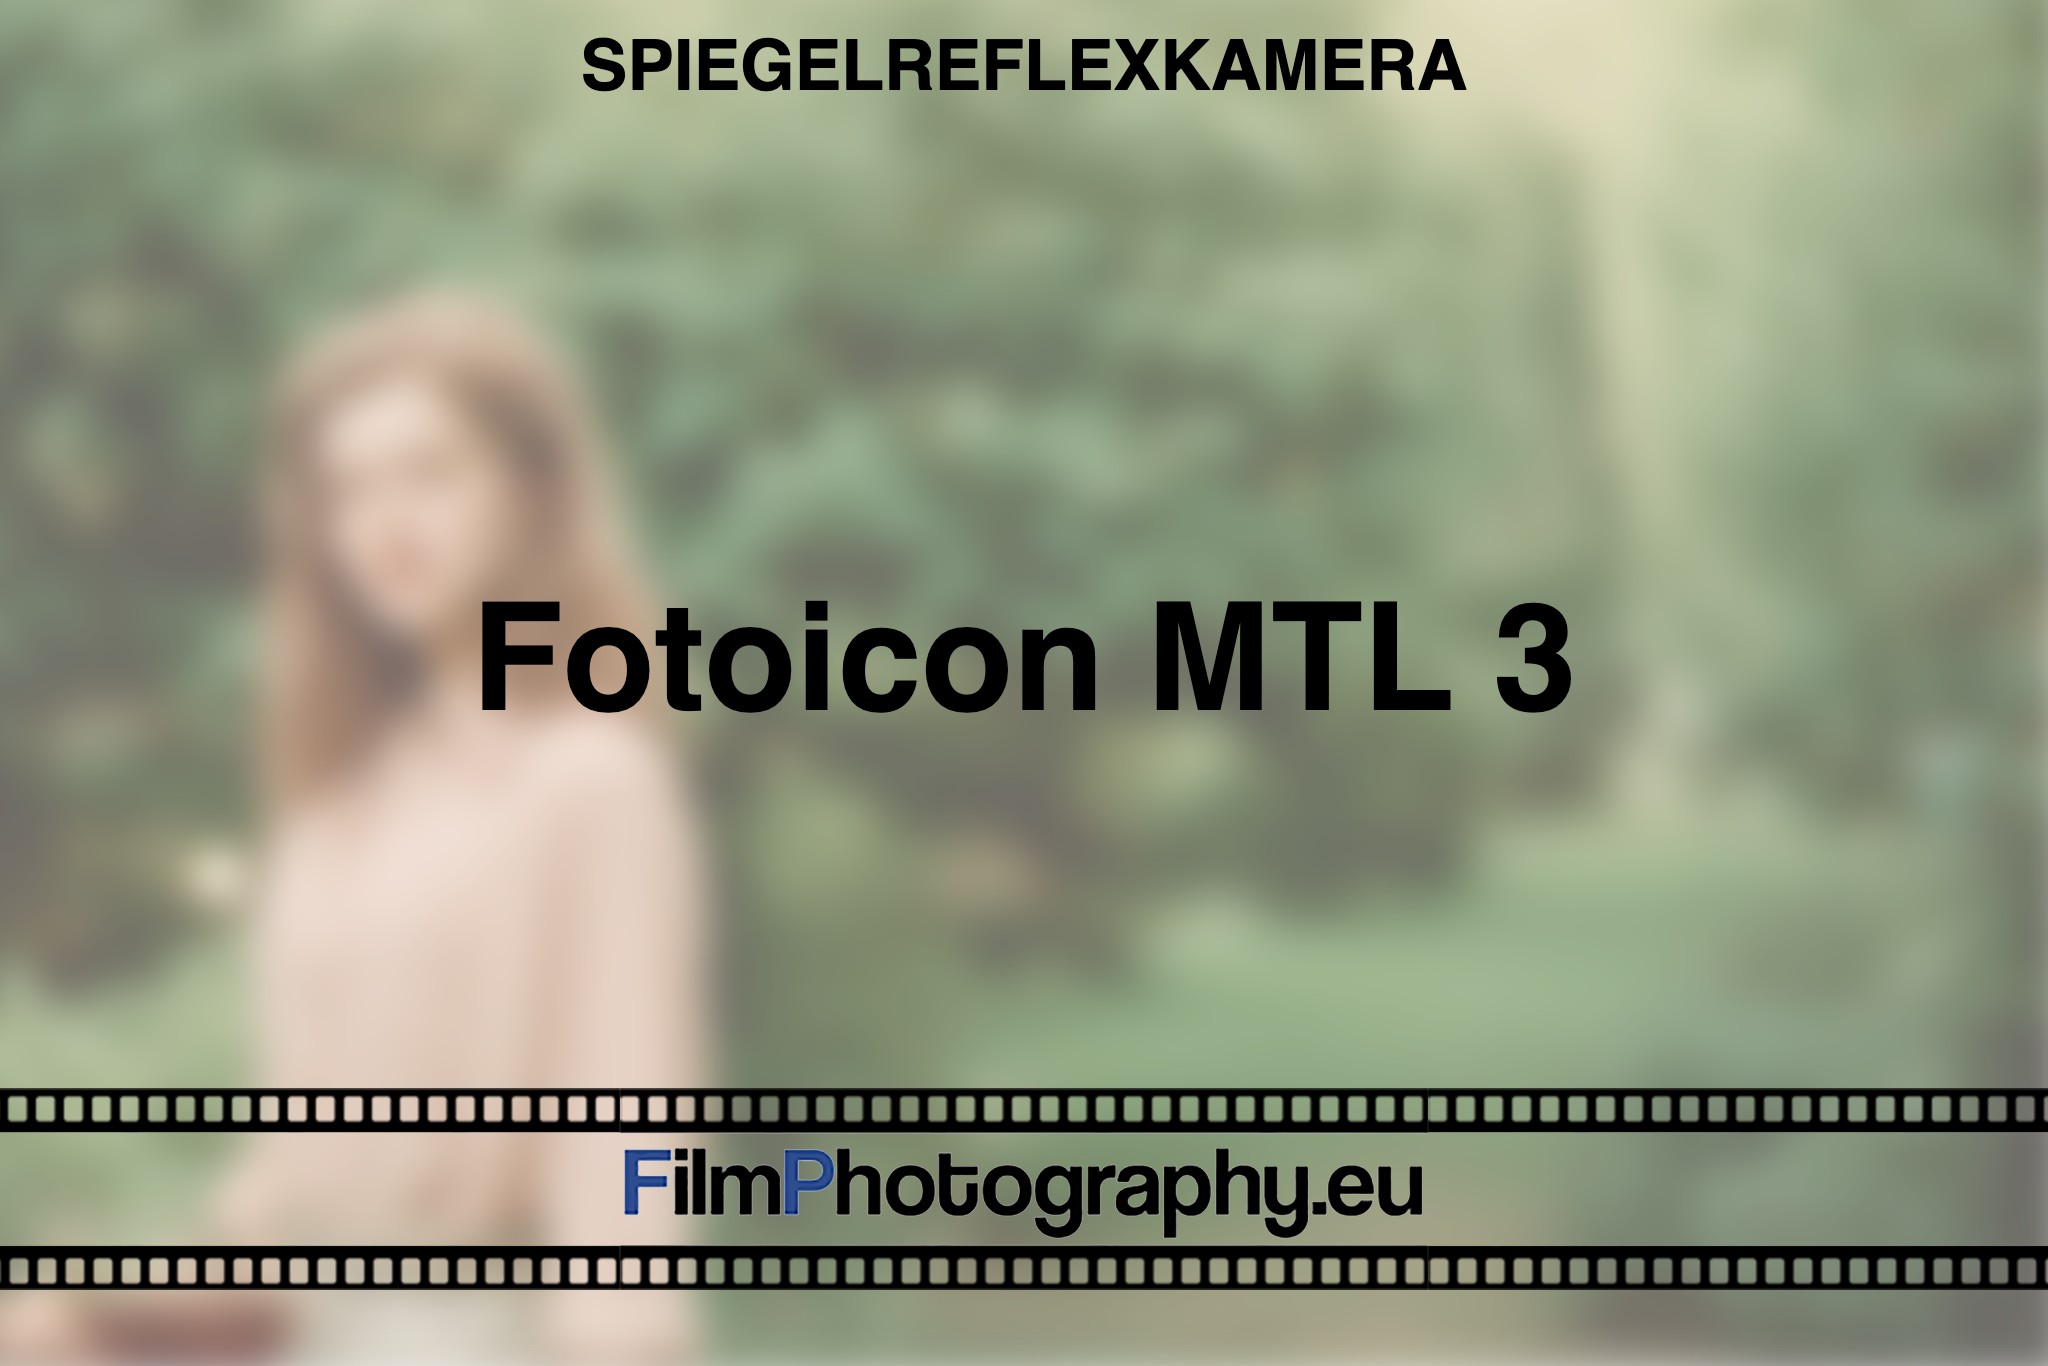 fotoicon-mtl-3-spiegelreflexkamera-bnv